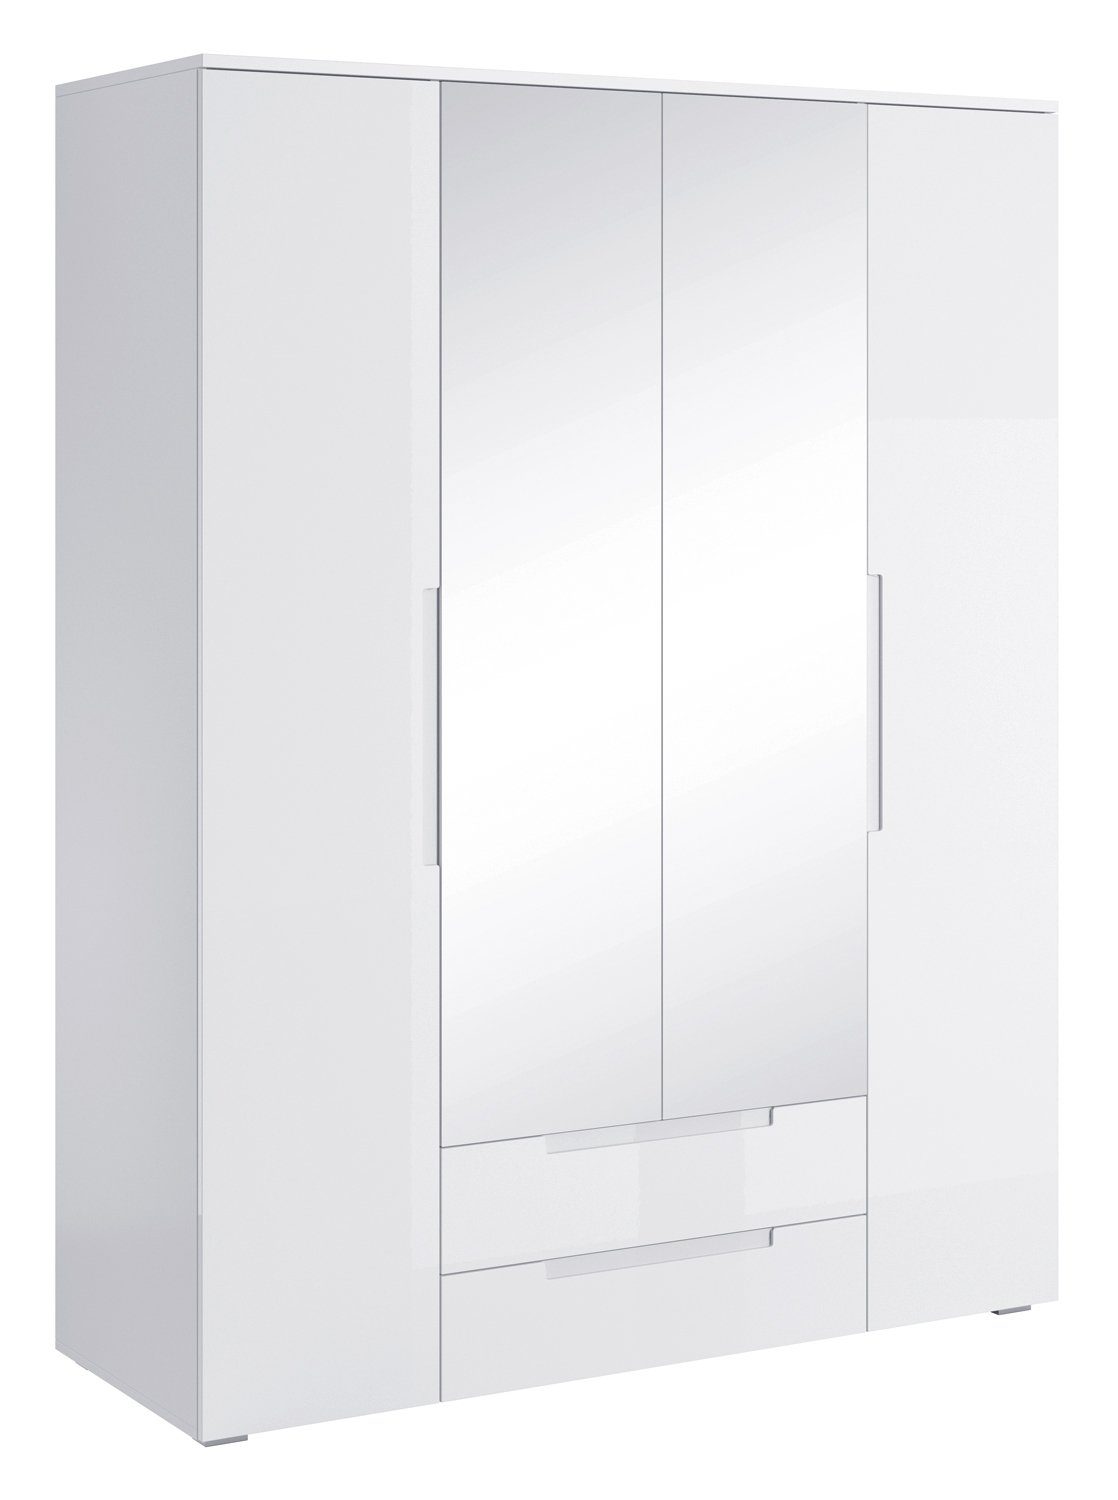 Pol-Power Drehtürenschrank Kleiderschrank SPICE, B 160 cm x H 208 cm, Weiß  Hochglanz, 4 Türen, 2 Schubladen, mit Spiegel, mit 2 Spiegeltüren, 2 Türen  und 2 Schubladen